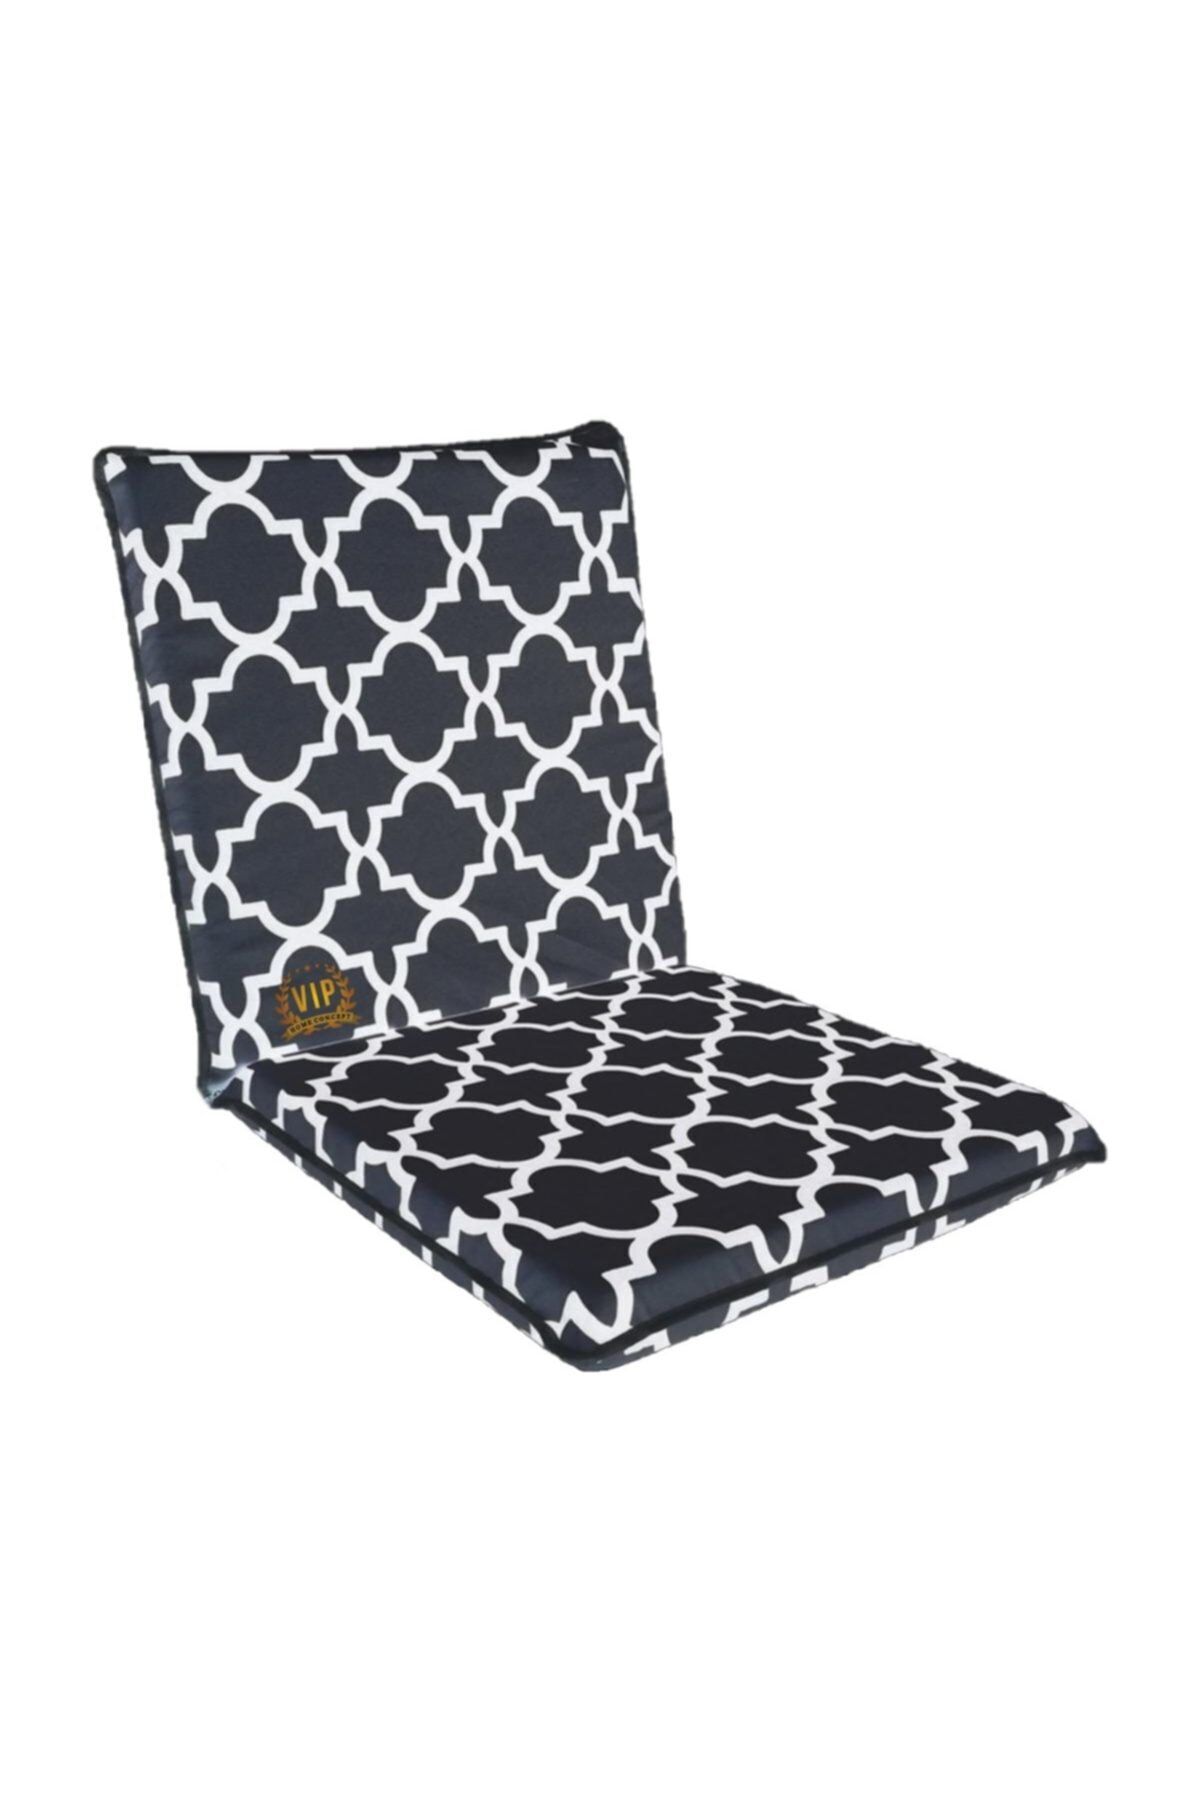 Vip Home Concept Market Ürünleri Sandalye Minderi 1 Adet Arkalıklı Büyük Fermuarlı Yıkanabilir Karaçatı